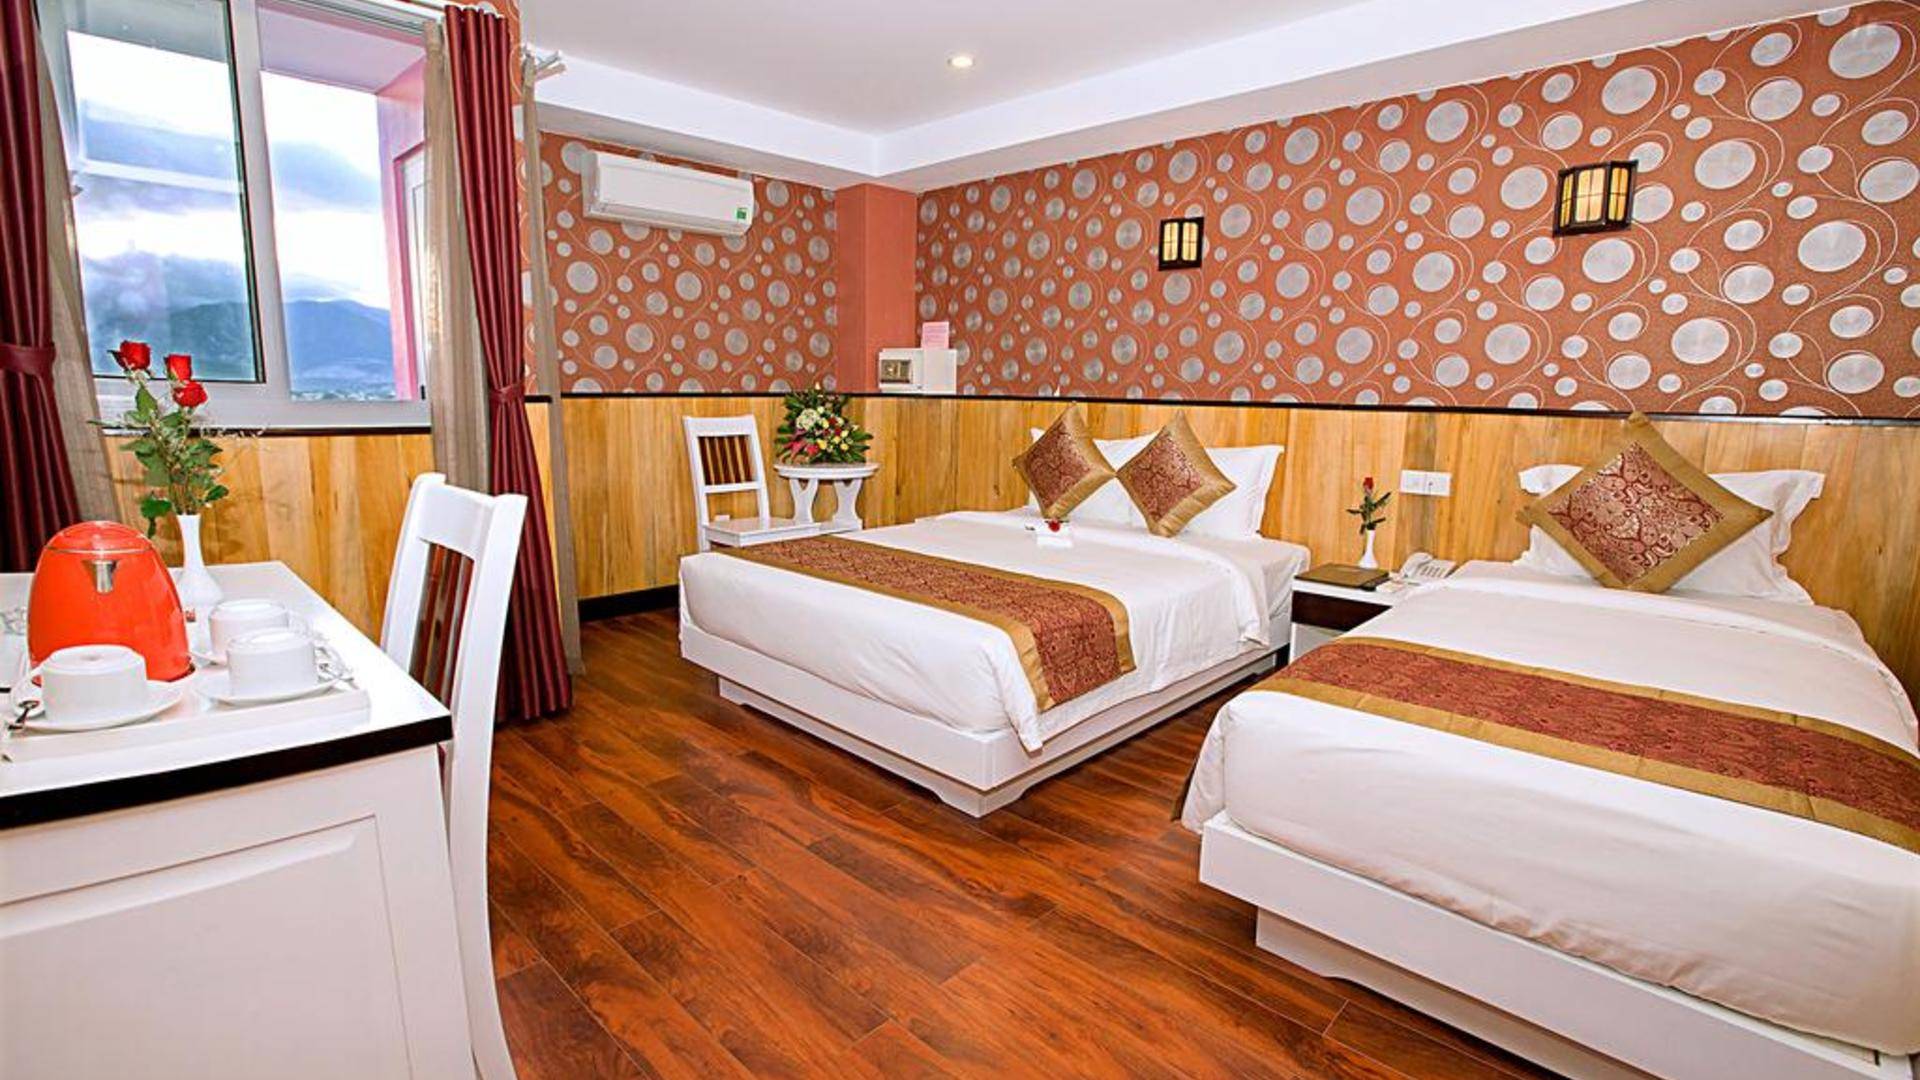 Отель golden rain 3* (вьетнам, нячанг) – туры, цены и отзывы - chip.travel